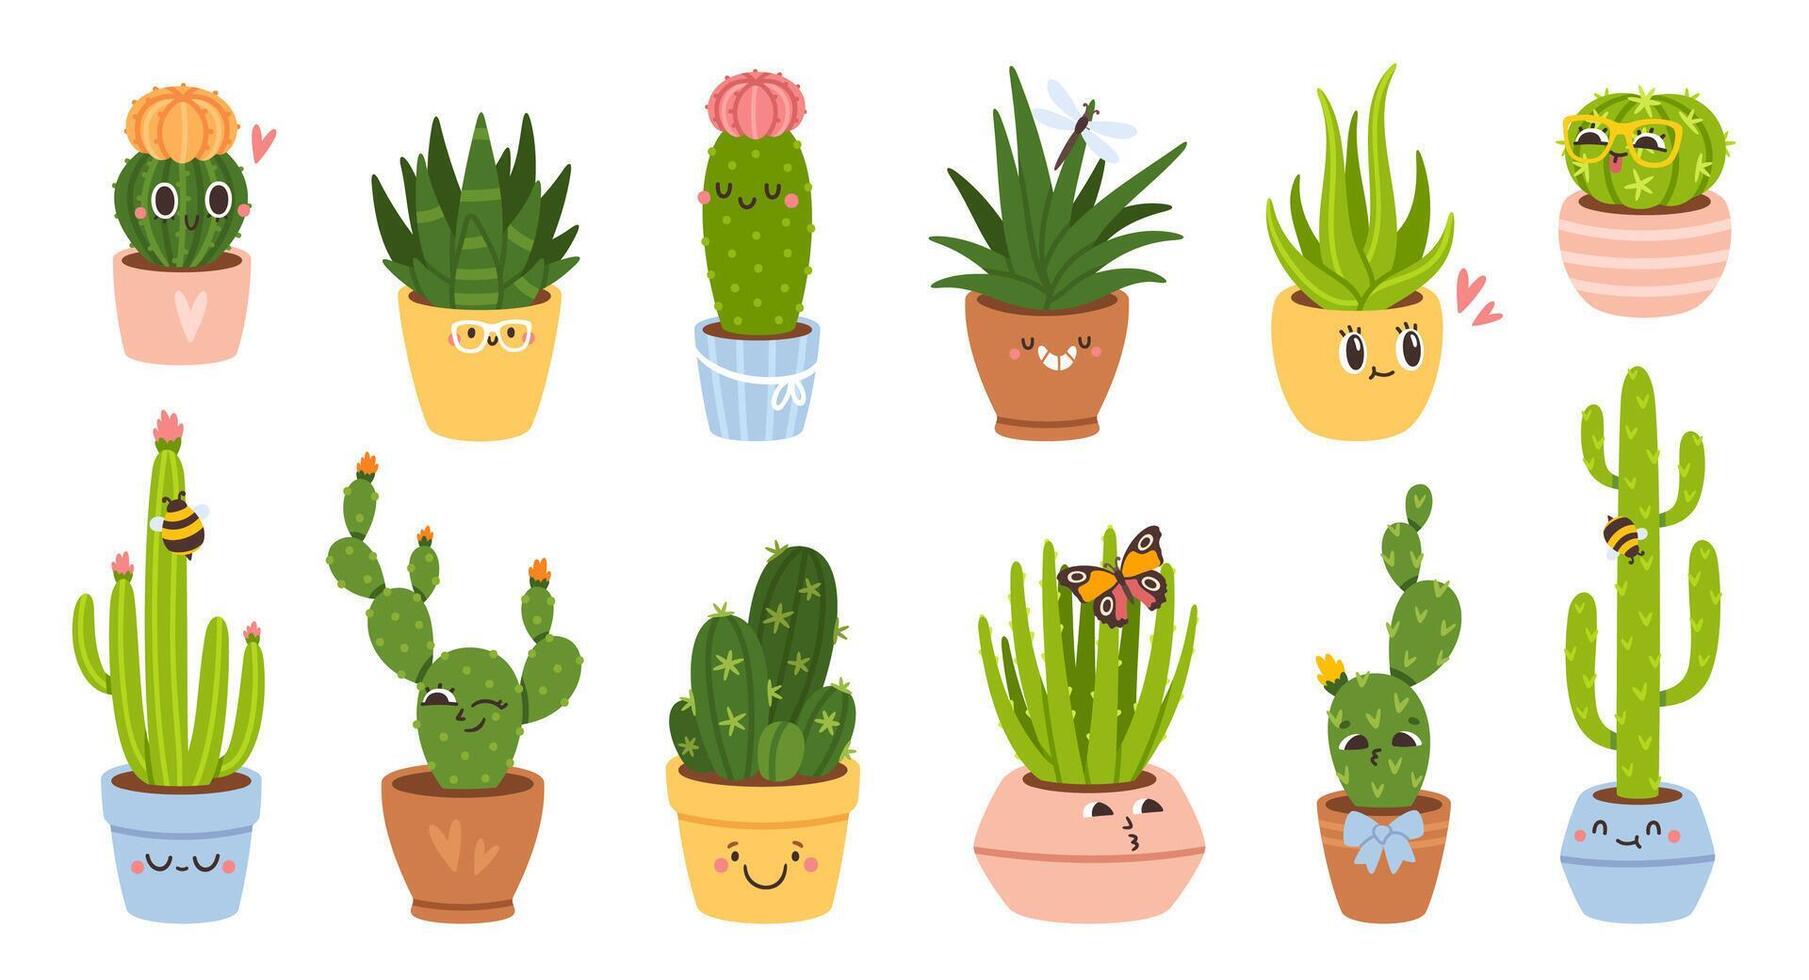 linda cactus. dibujos animados cactus, suculentas o cactus planta caracteres en ollas. mexicano espinoso plantas con gracioso caras y emoción. divertido hogar cactus pegatinas y insignias conjunto vector